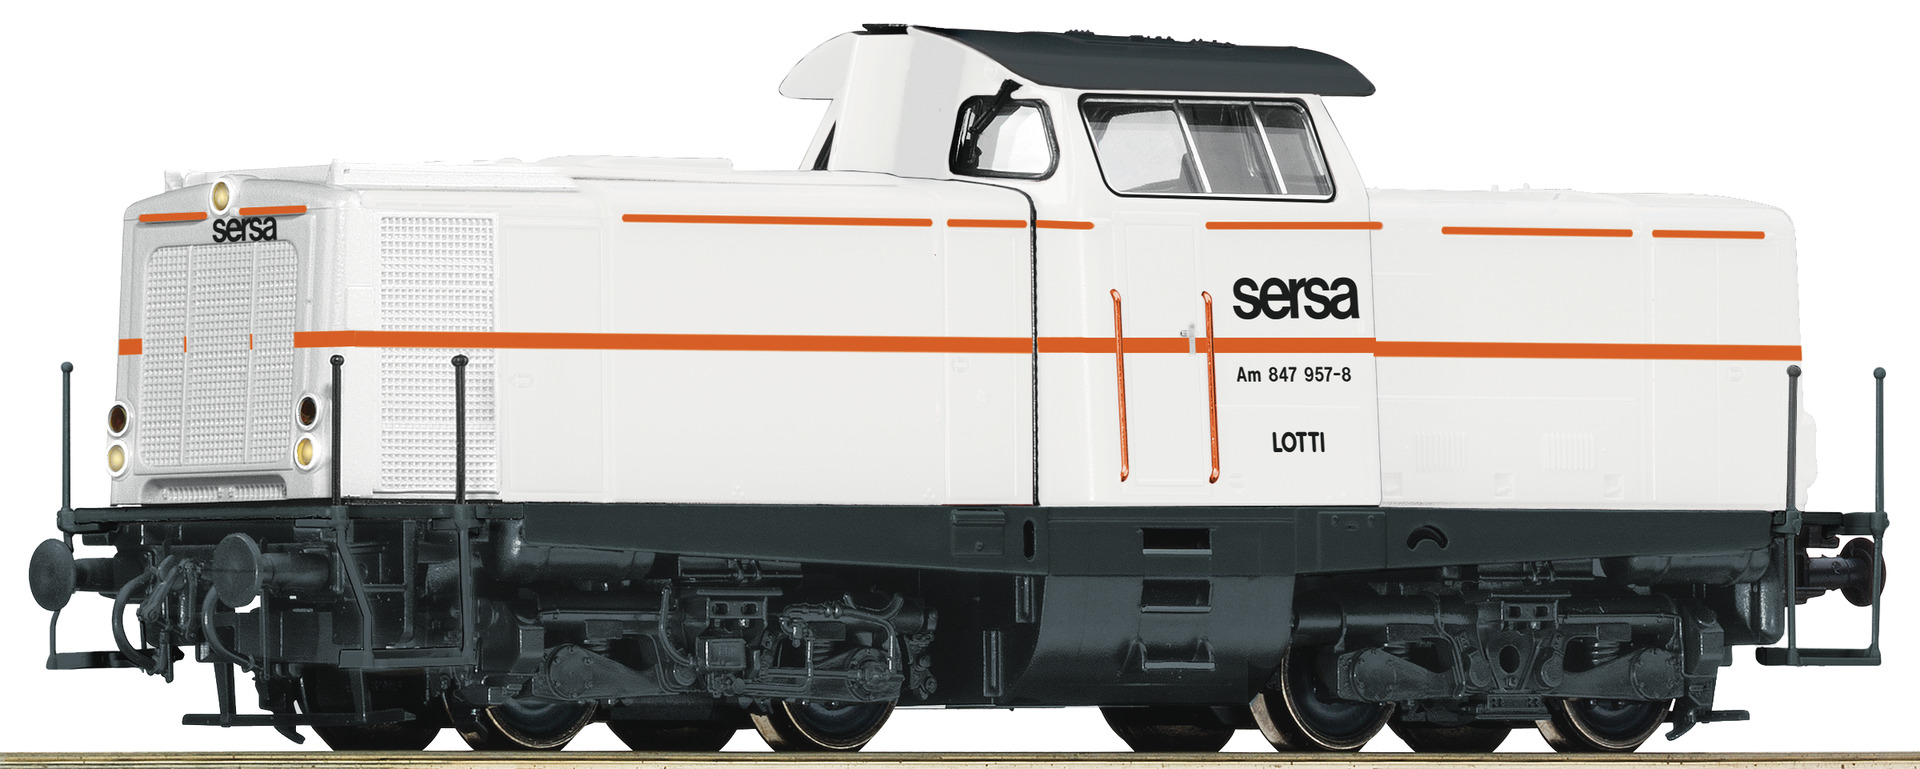 Roco 52566, SERSA Diesellokomotive Am 847 957-8, Ep. VI, DC, digital mit Sound